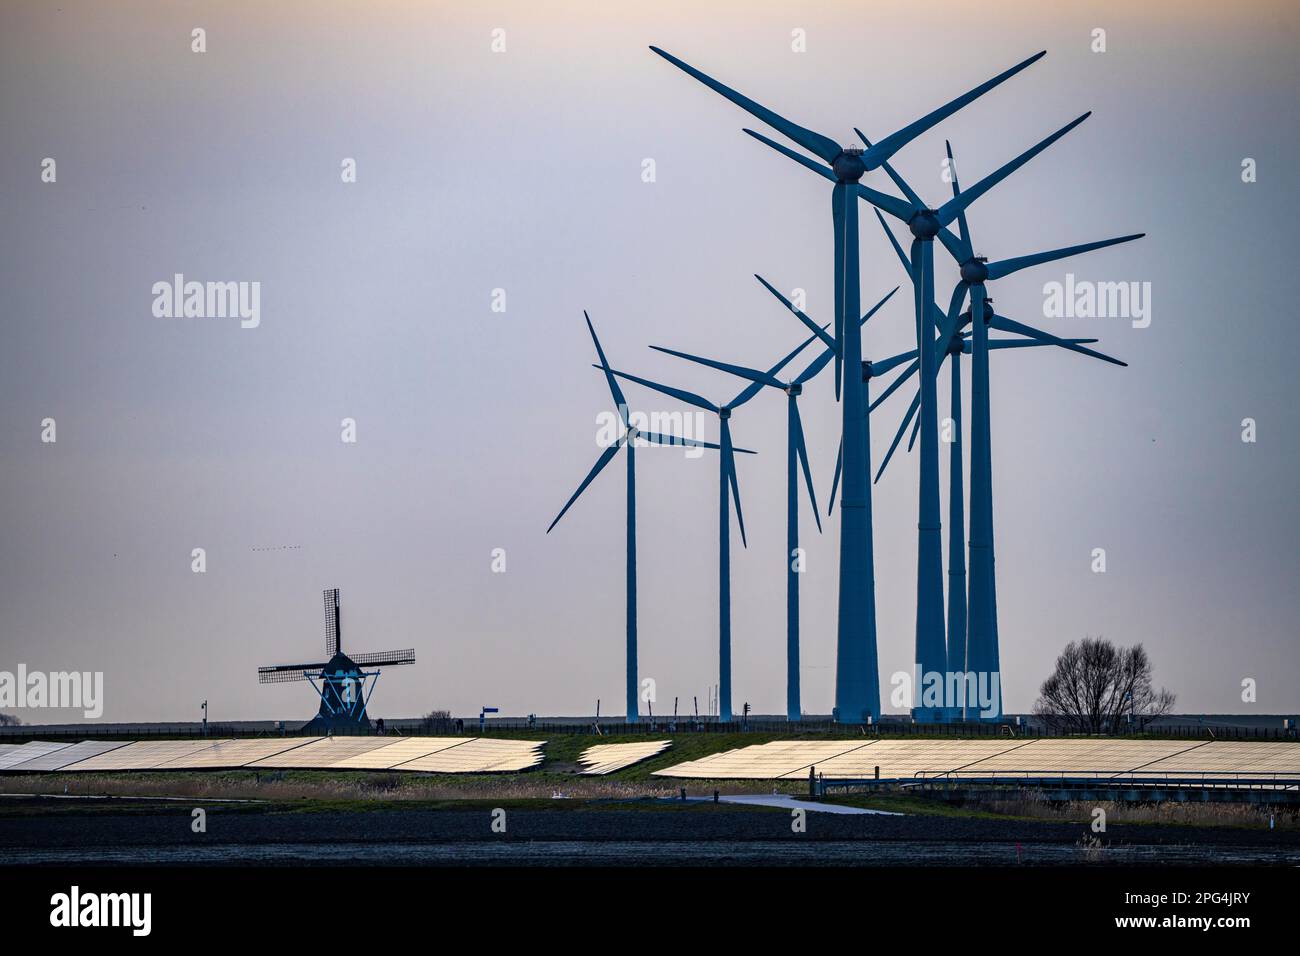 Windmühle Poldermolen De Goliath steht zwischen den Hightech-Windturbinen in Eemshaven, einer historischen Windmühle aus dem Jahr 1882, die wiederaufgebaut und wiederaufgebaut wurde Stockfoto